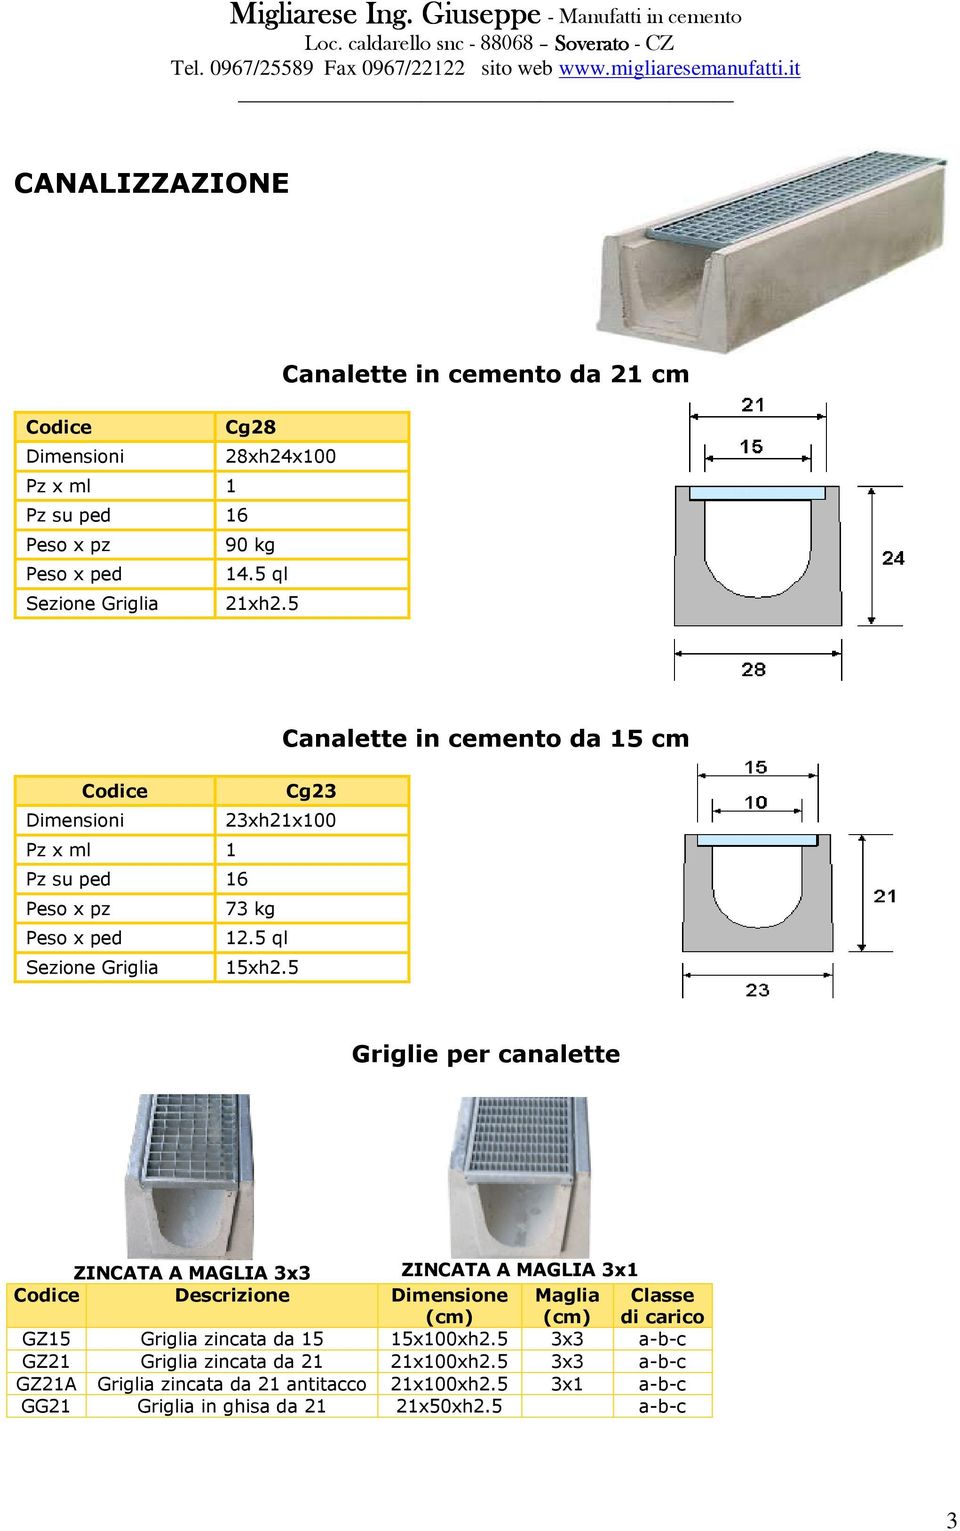 5 Canalette in cemento da 15 cm Griglie per canalette ZINCATA A MAGLIA 3x3 ZINCATA A MAGLIA 3x1 Descrizione Dimensione (cm) Maglia (cm) Classe di carico